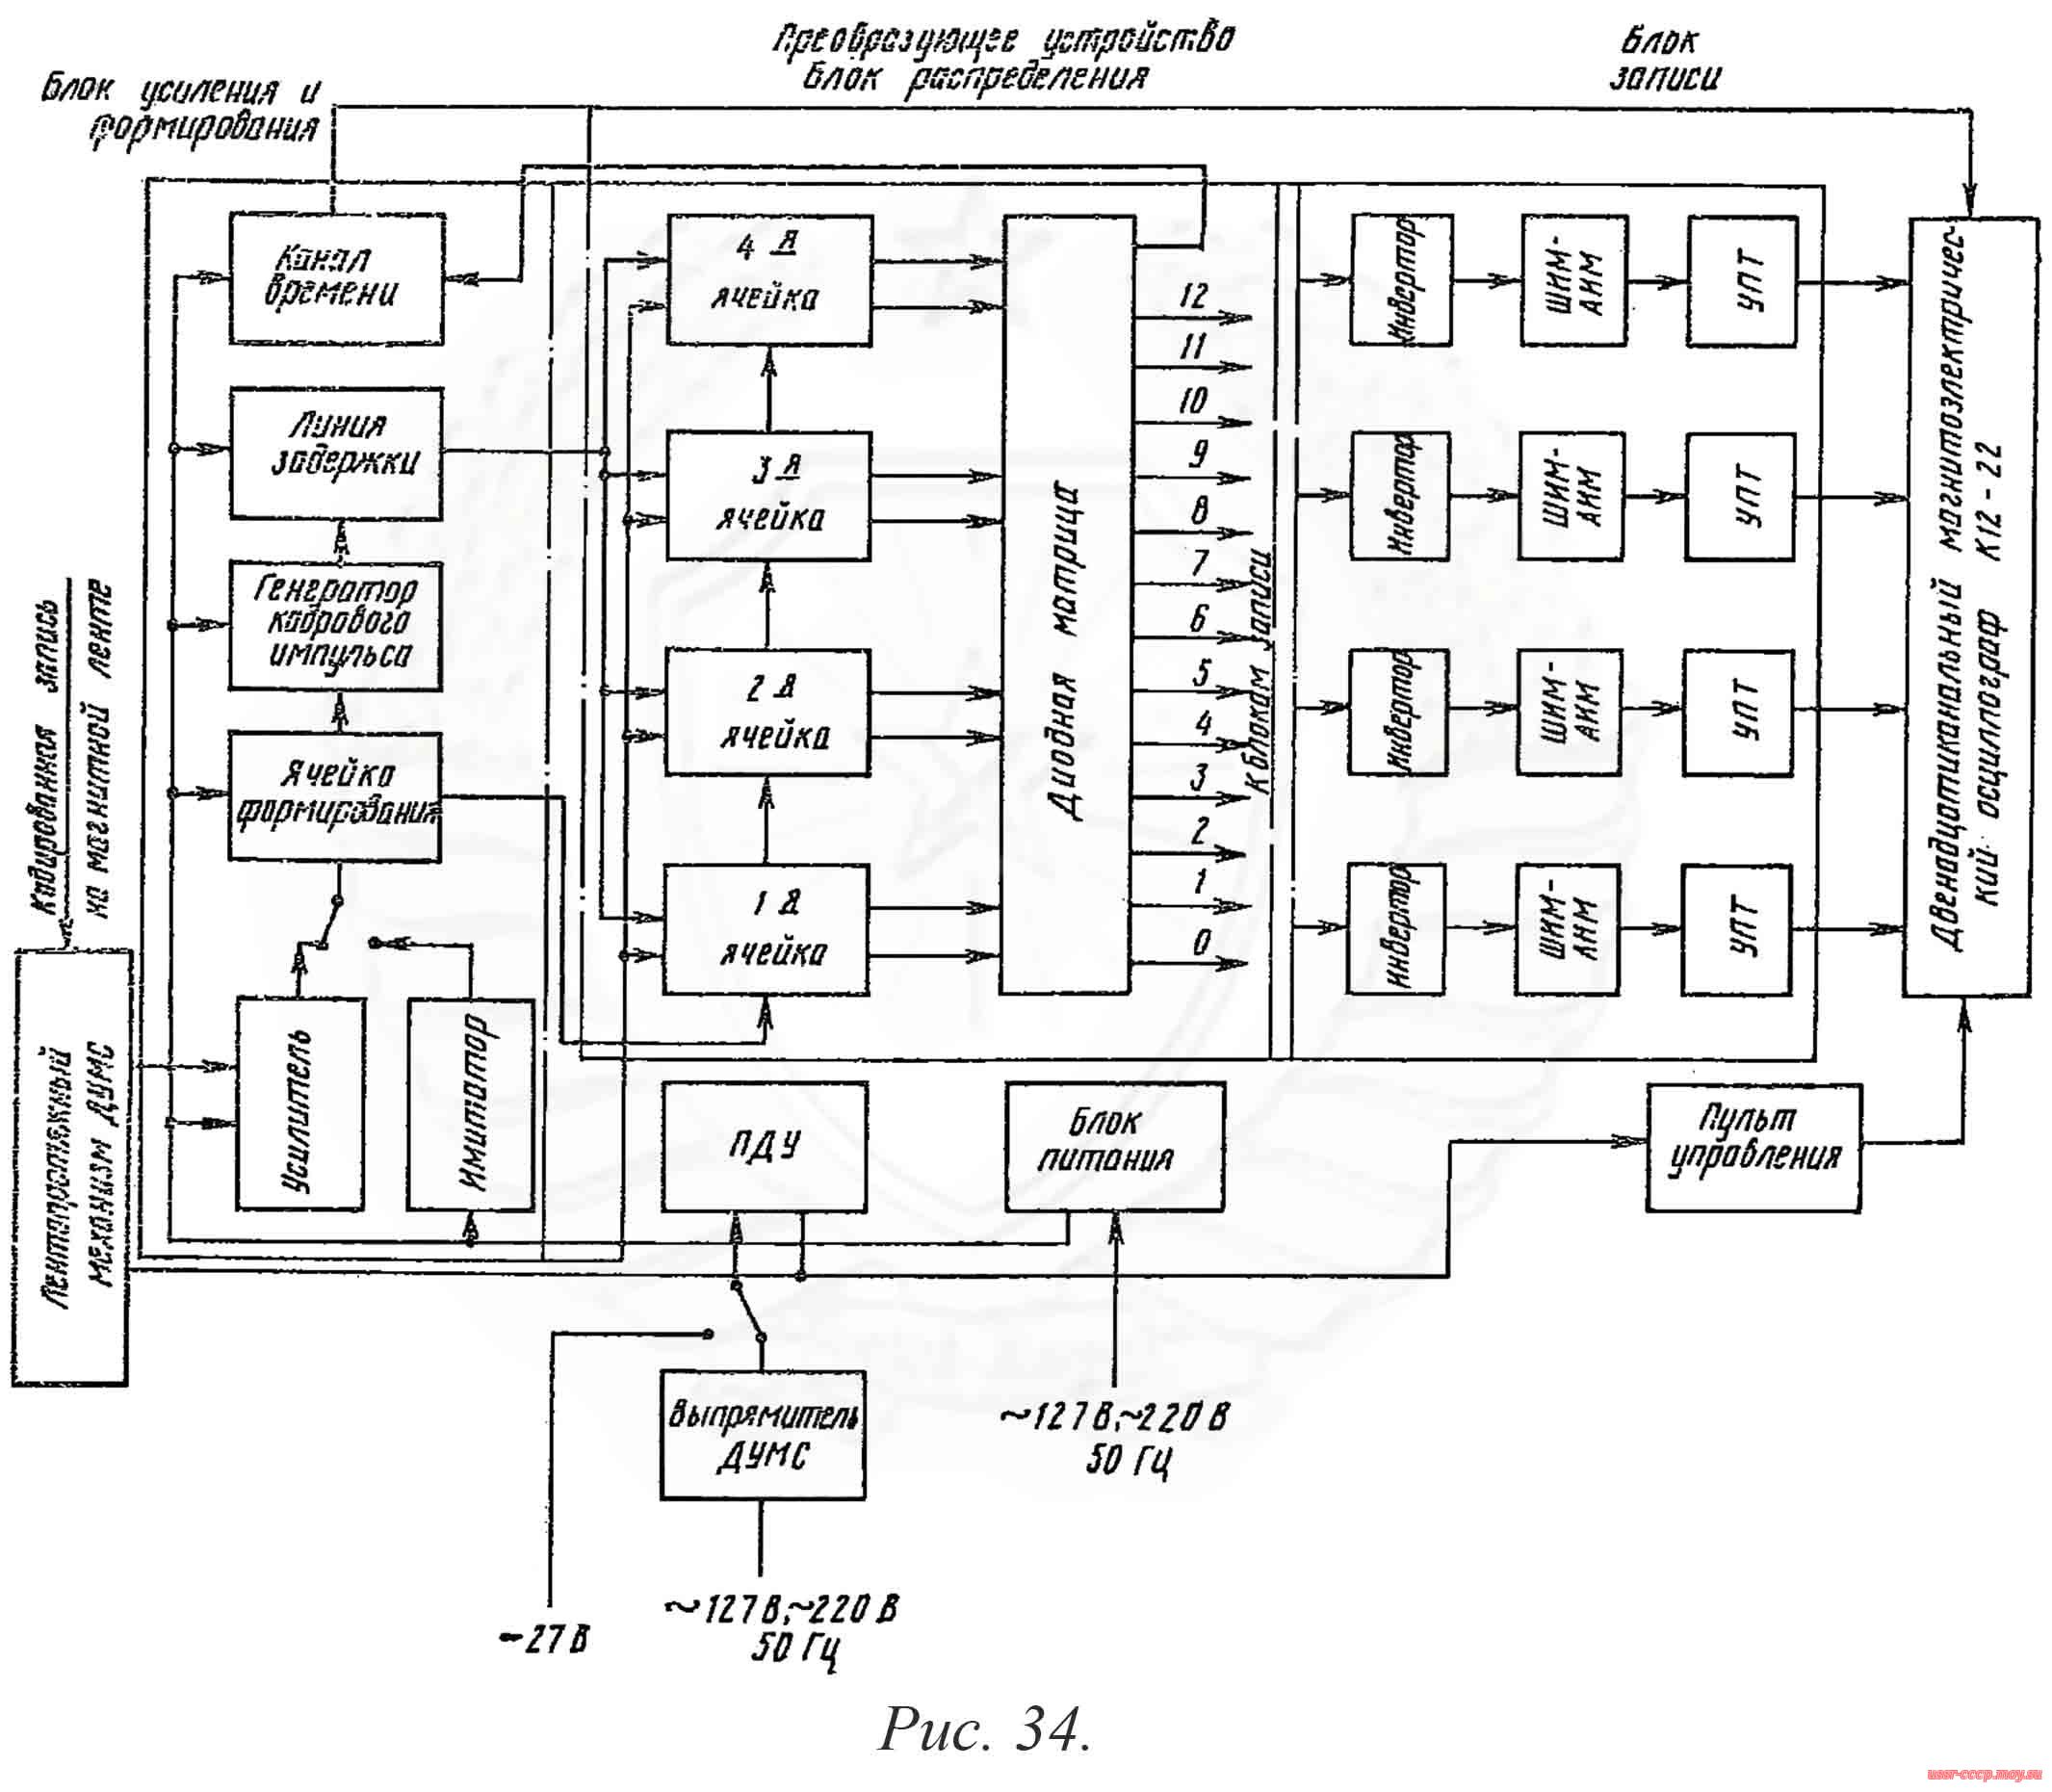 Рис. 34. Схема функциональная декодирующего устройства ДУМС.